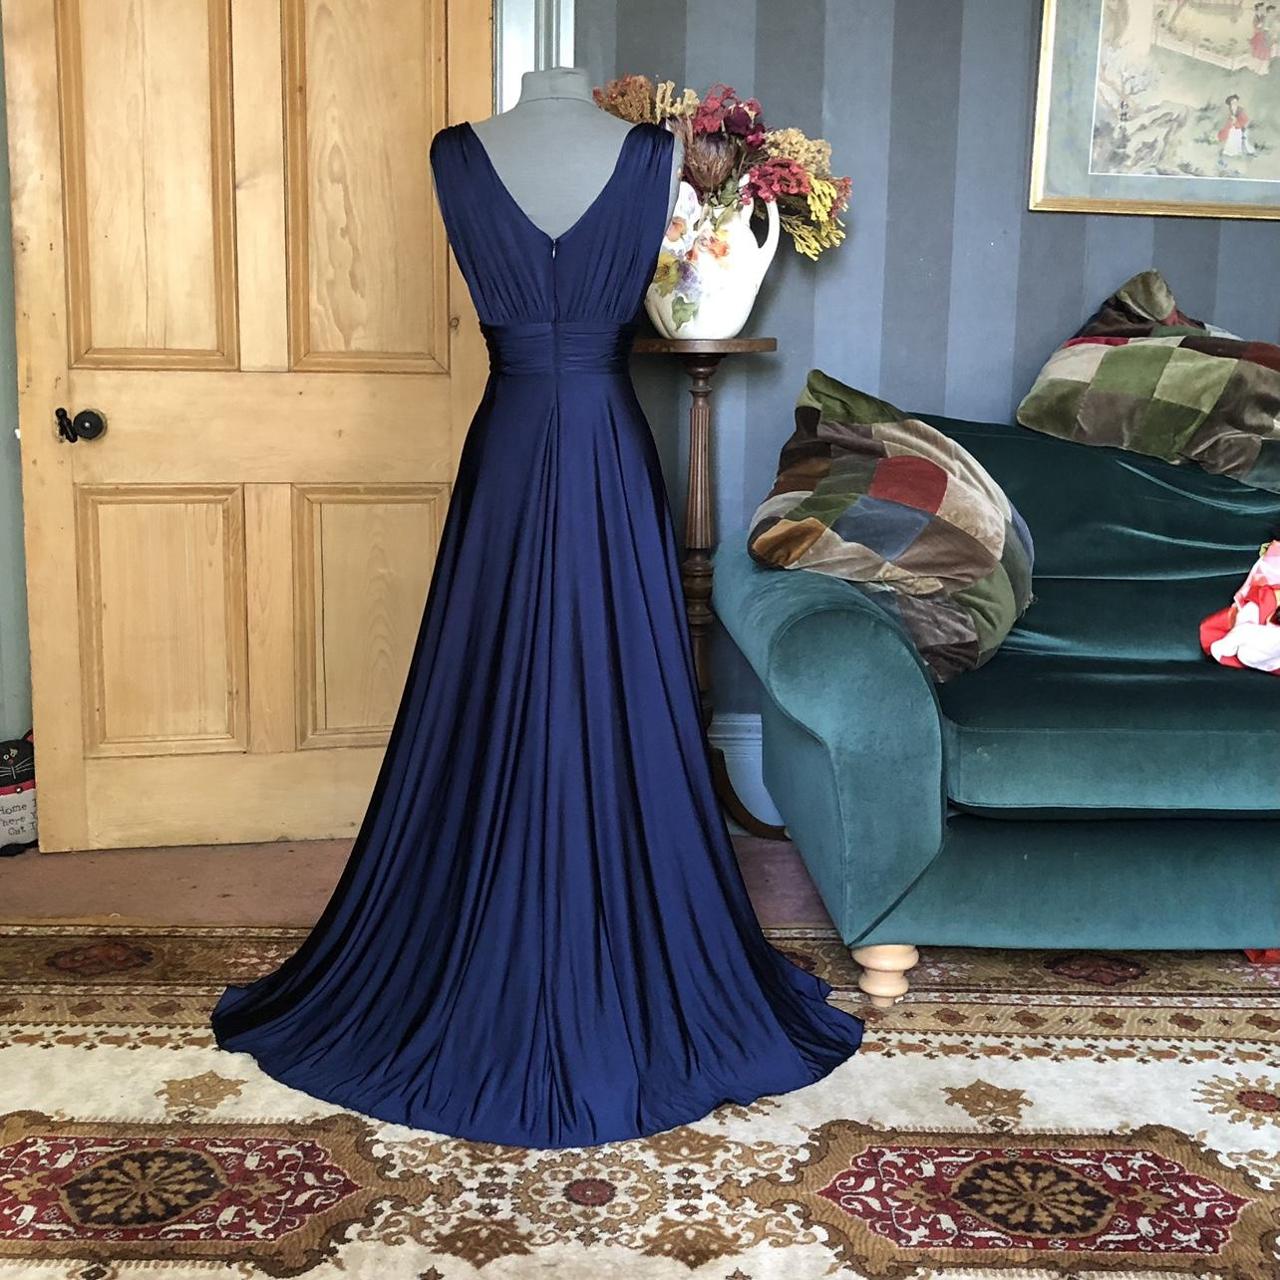 Biba navy blue dress in a U.K. size 10. Lined... - Depop